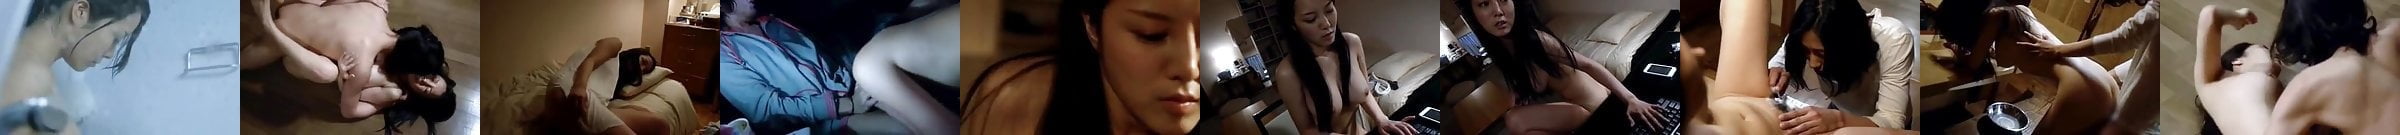 Hong Kong Star Rosamund Kwan Sex Scene Porn D8 Xhamster Xhamster